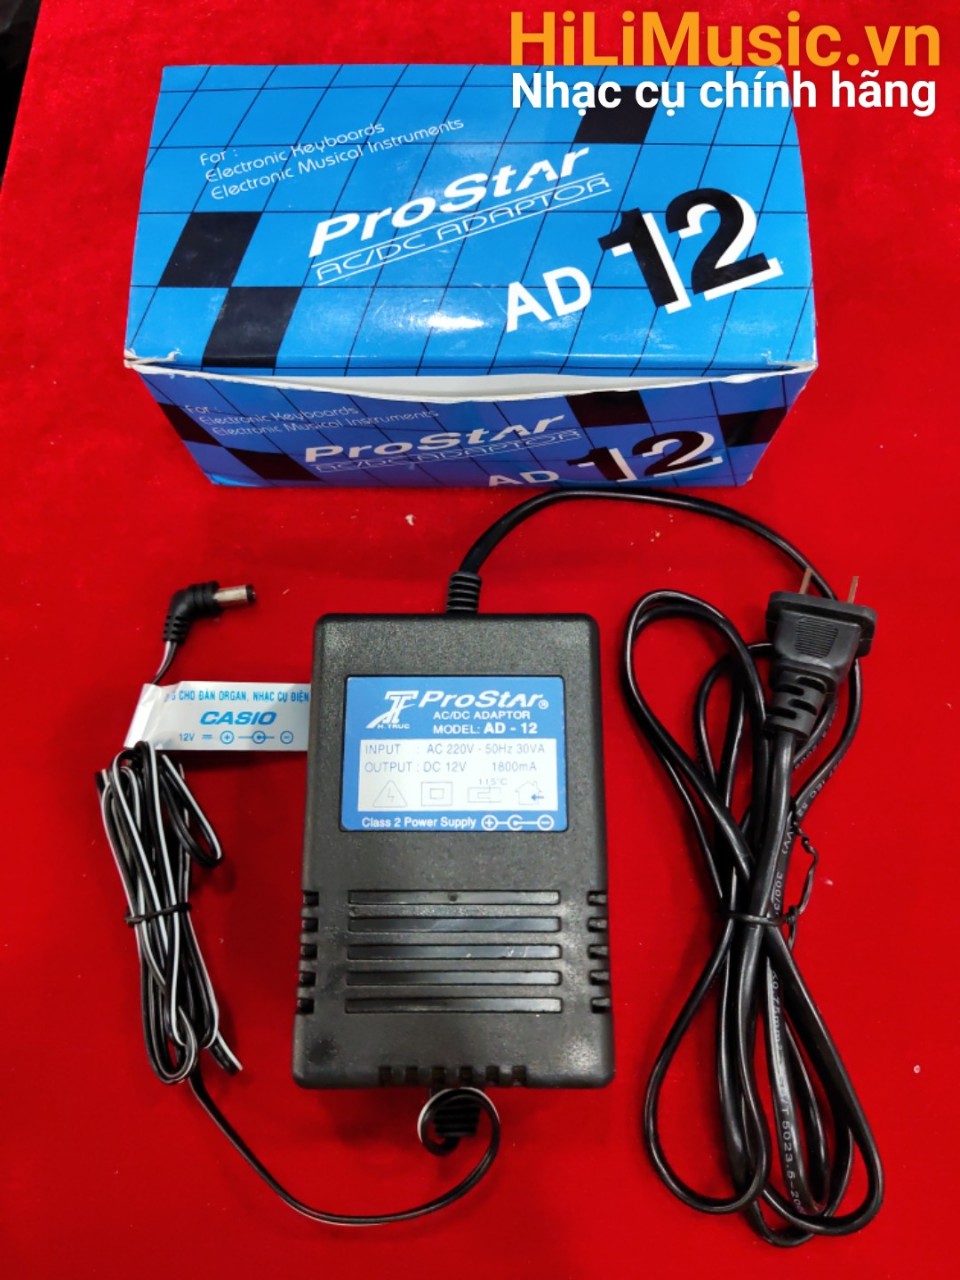 Nguồn đàn Casio Adaptor ProStar AD-12 xanh